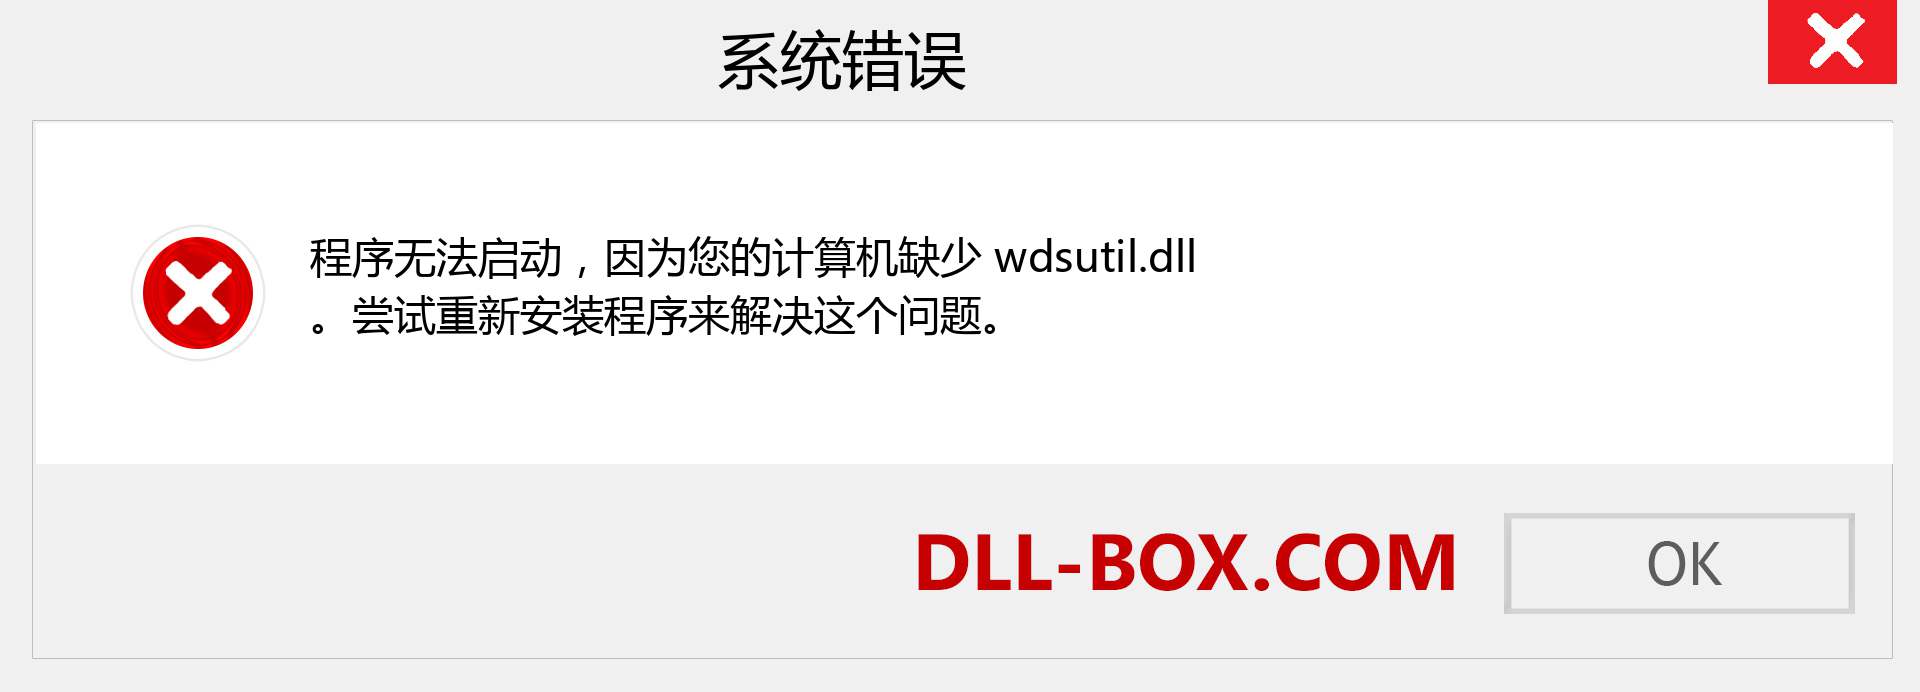 wdsutil.dll 文件丢失？。 适用于 Windows 7、8、10 的下载 - 修复 Windows、照片、图像上的 wdsutil dll 丢失错误